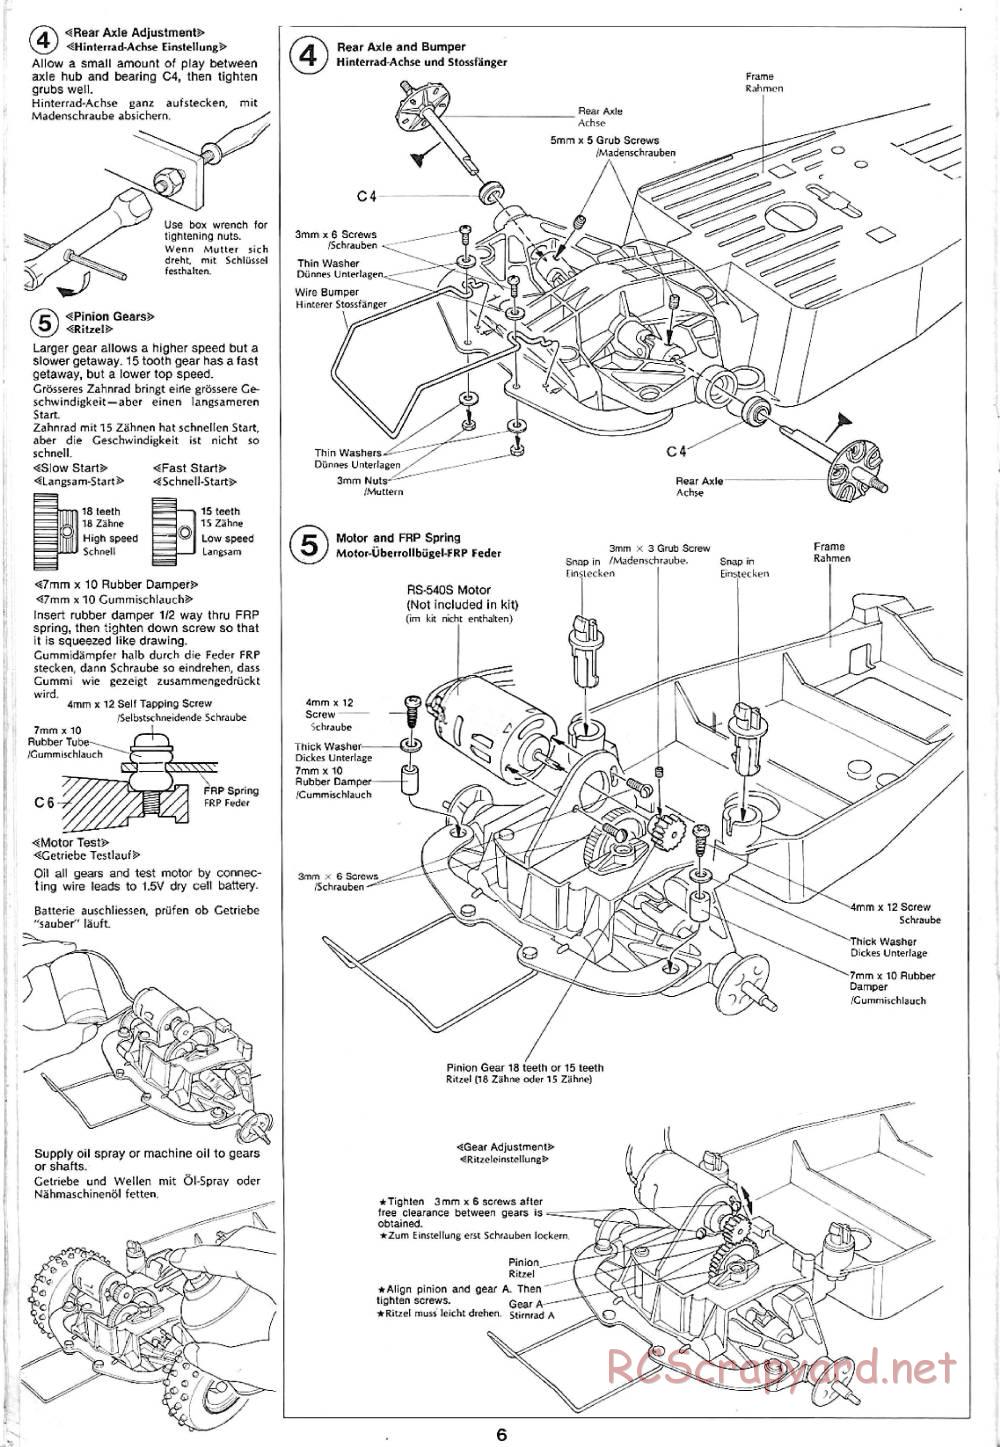 Tamiya - Sand Rover - 58024 - Manual - Page 6